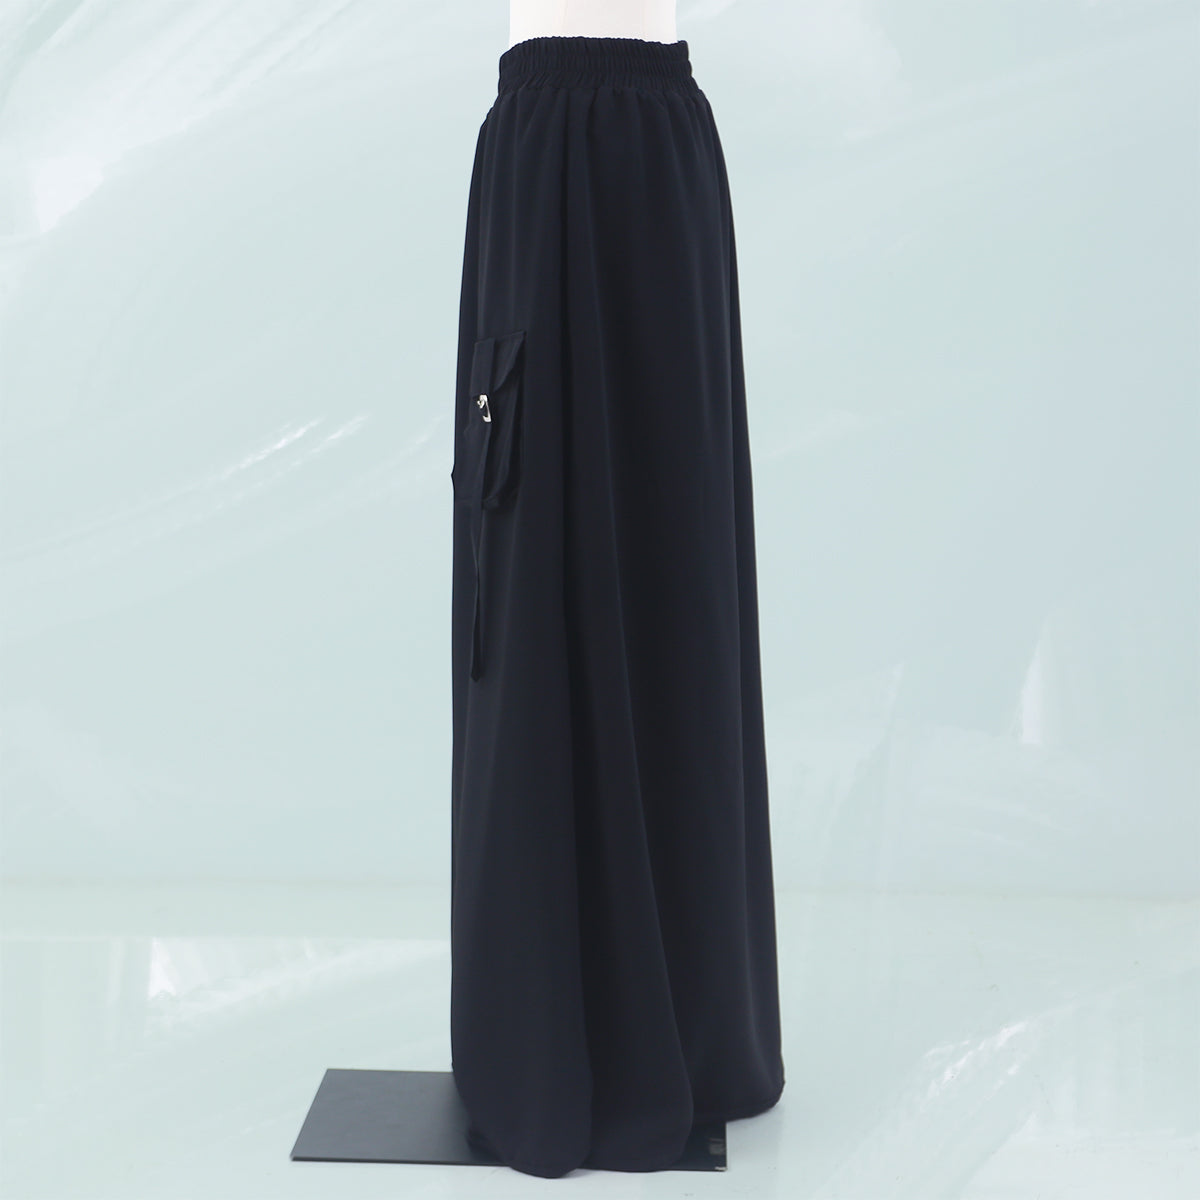 Nabila Skirt - Black